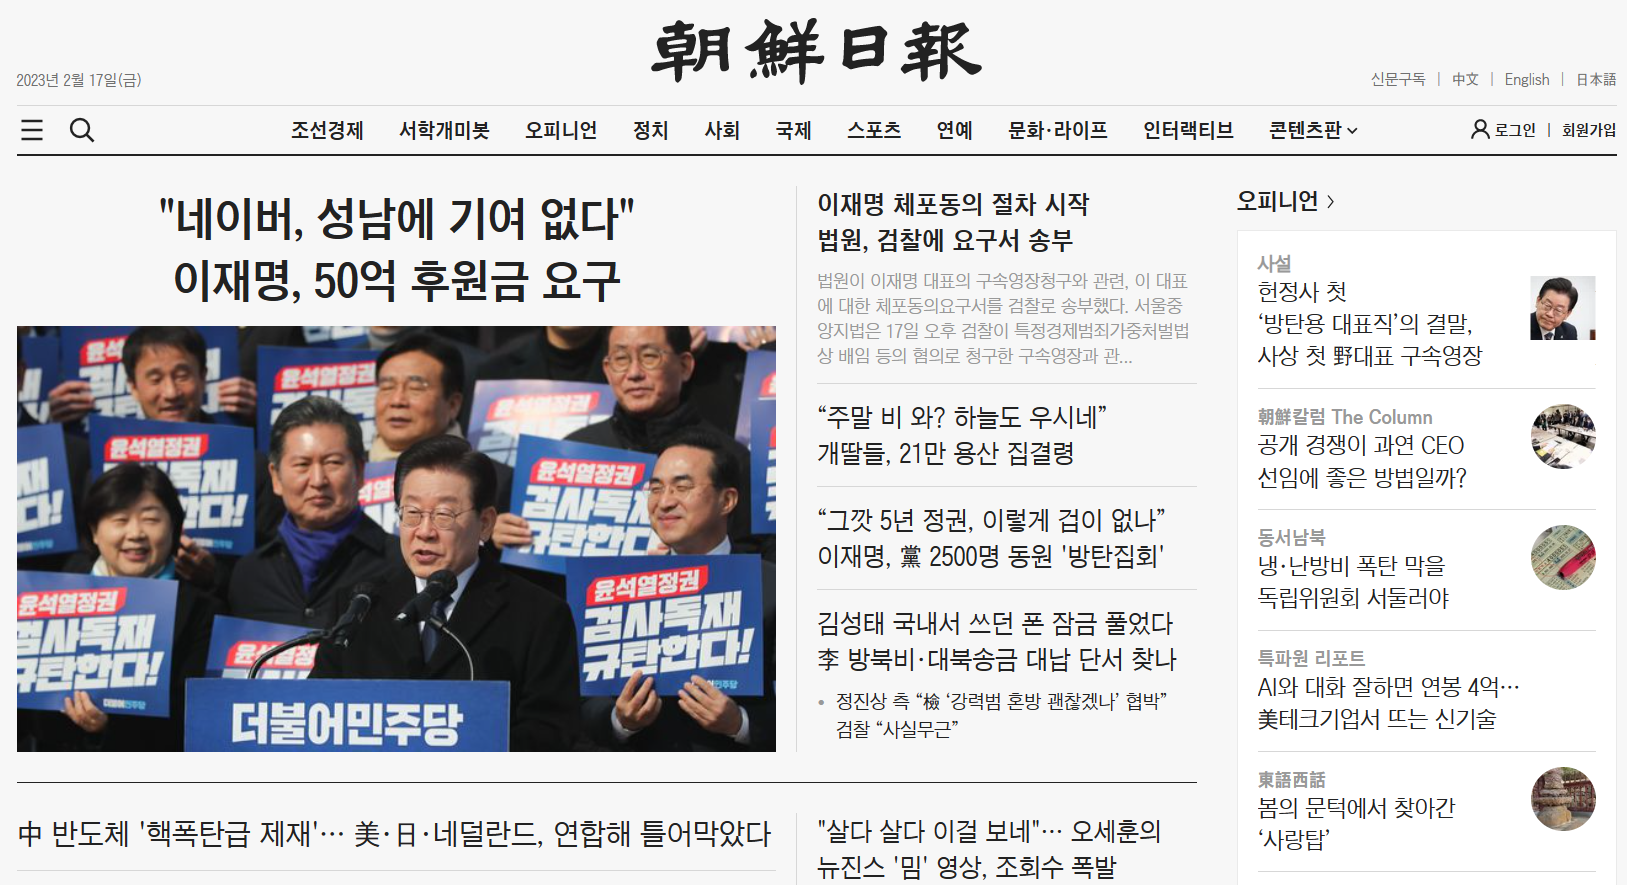 조선일보 인터넷 신문 바로 보기